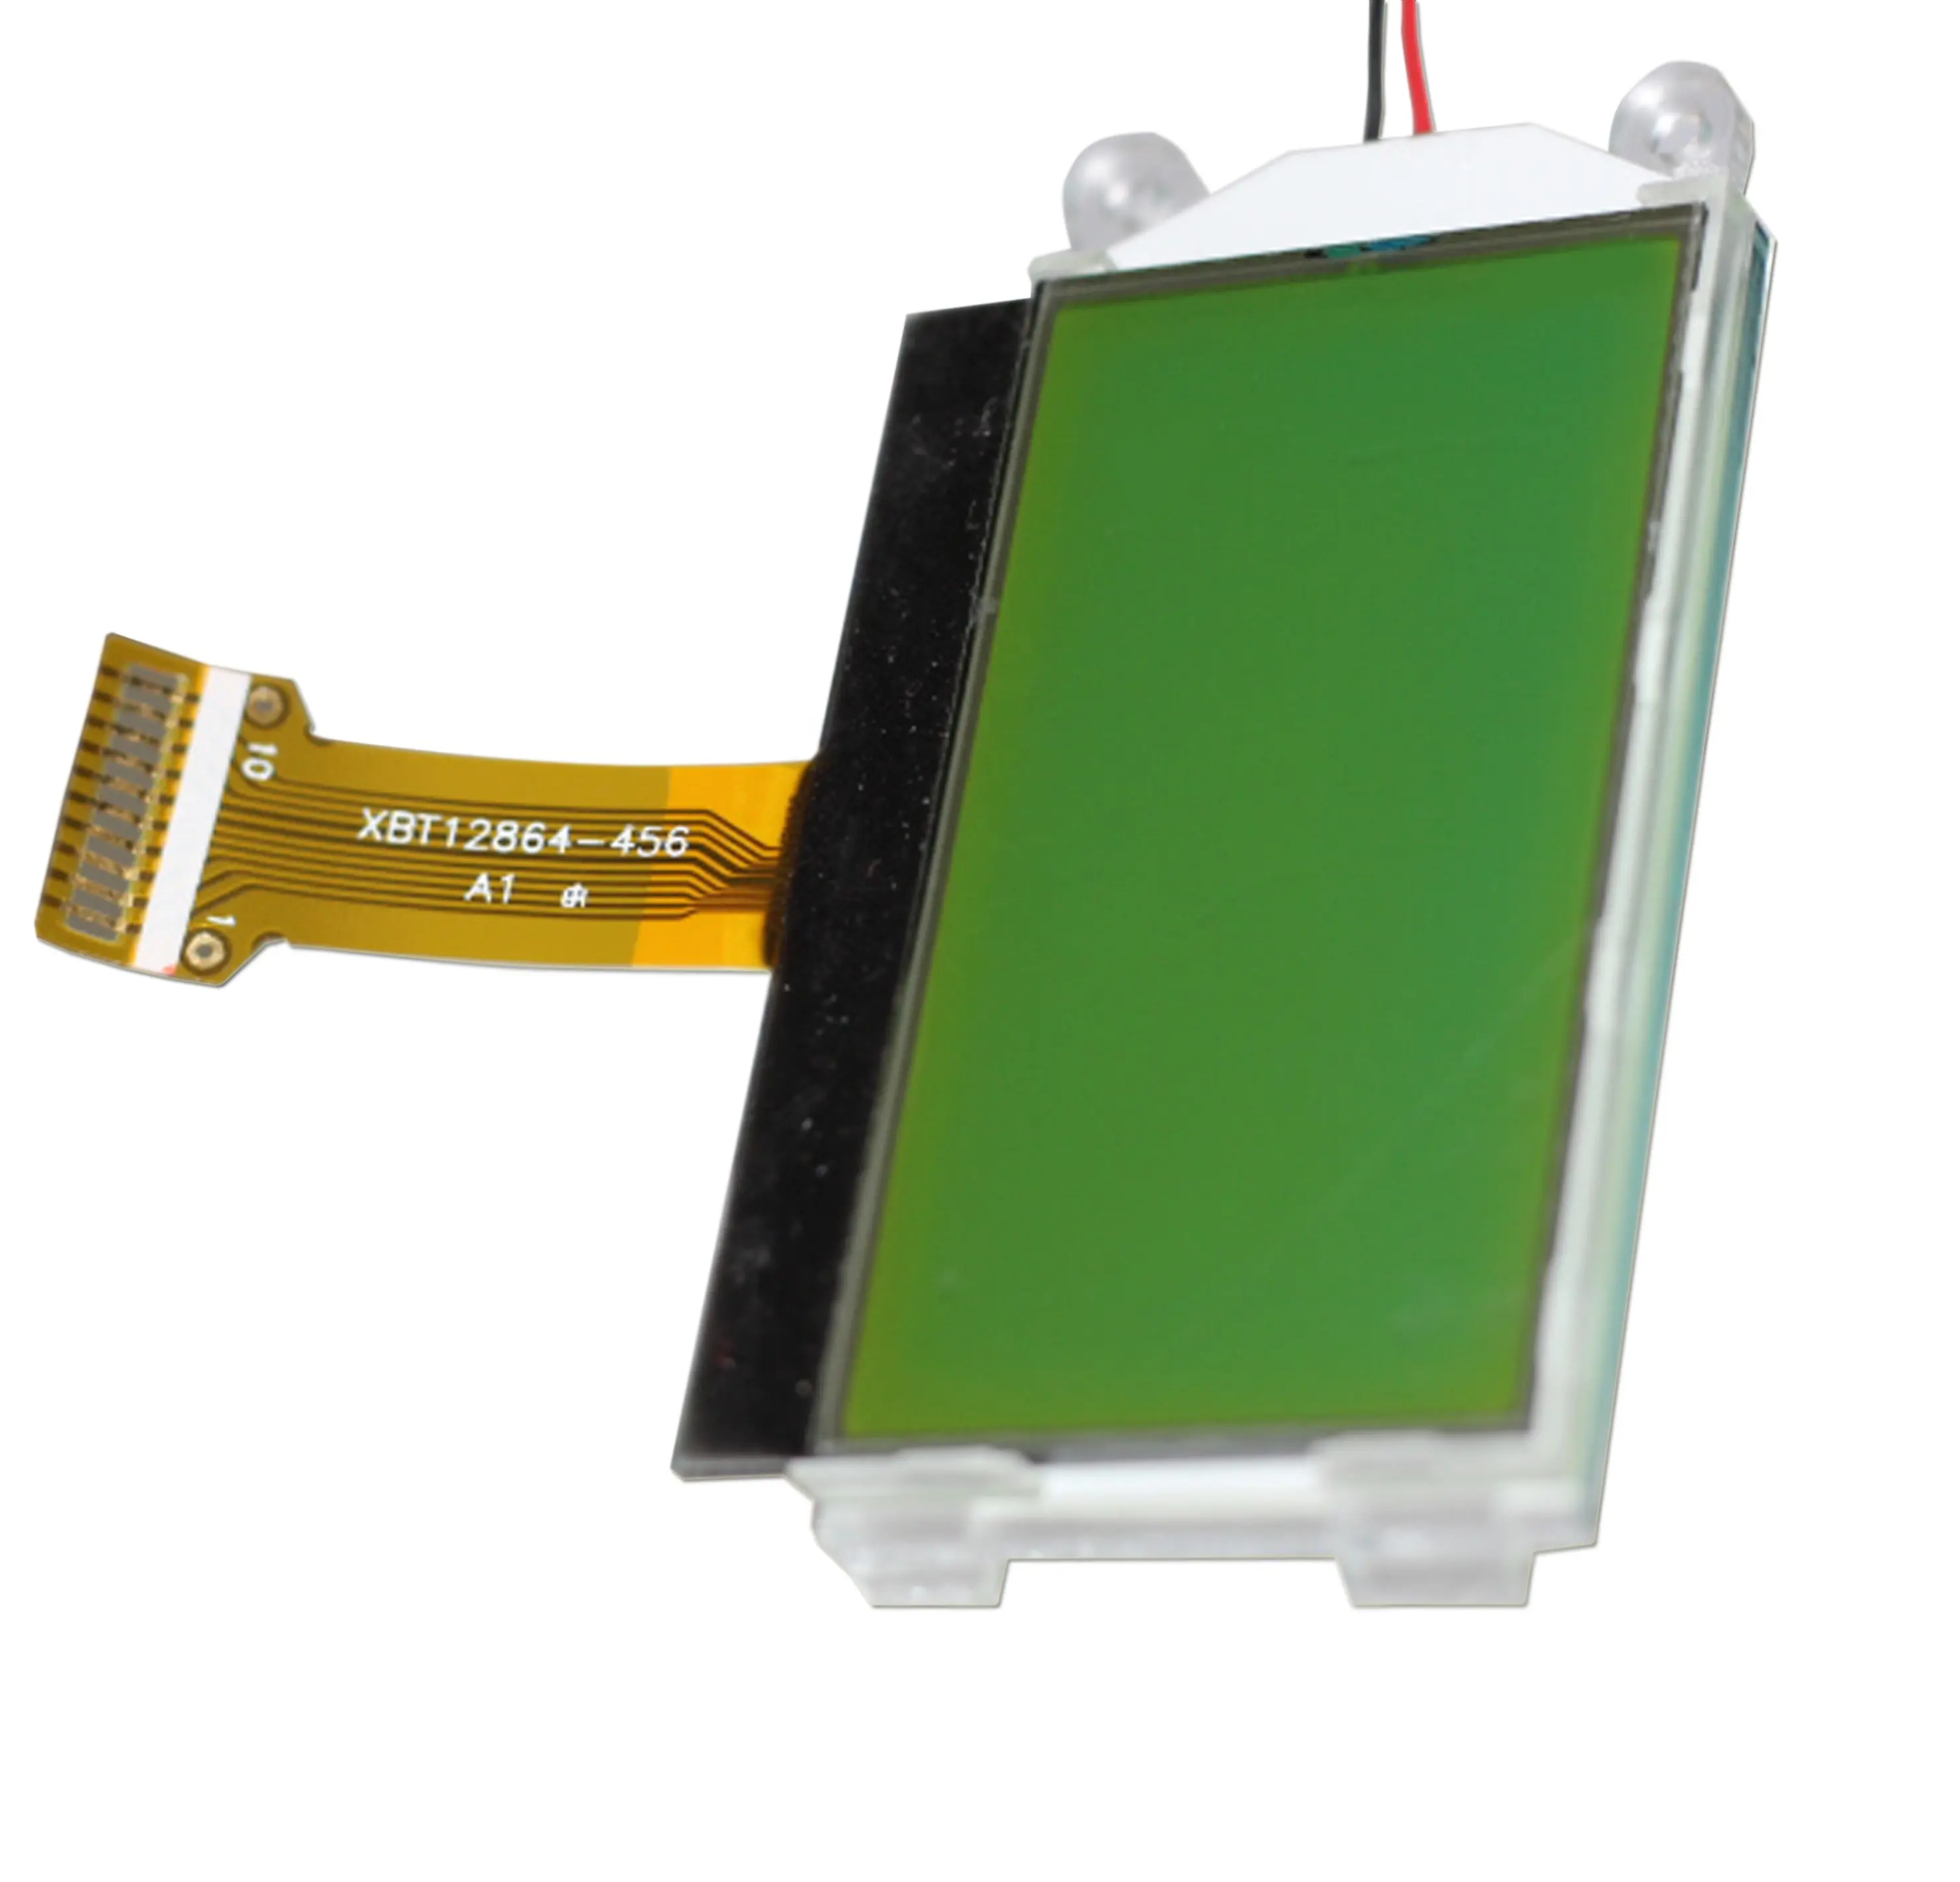 จอแอลซีดีจีนซัพพลายราคาขายส่งของกราฟิก 128x64 จุด COG STN โมดูลจอแสดงผล LCD